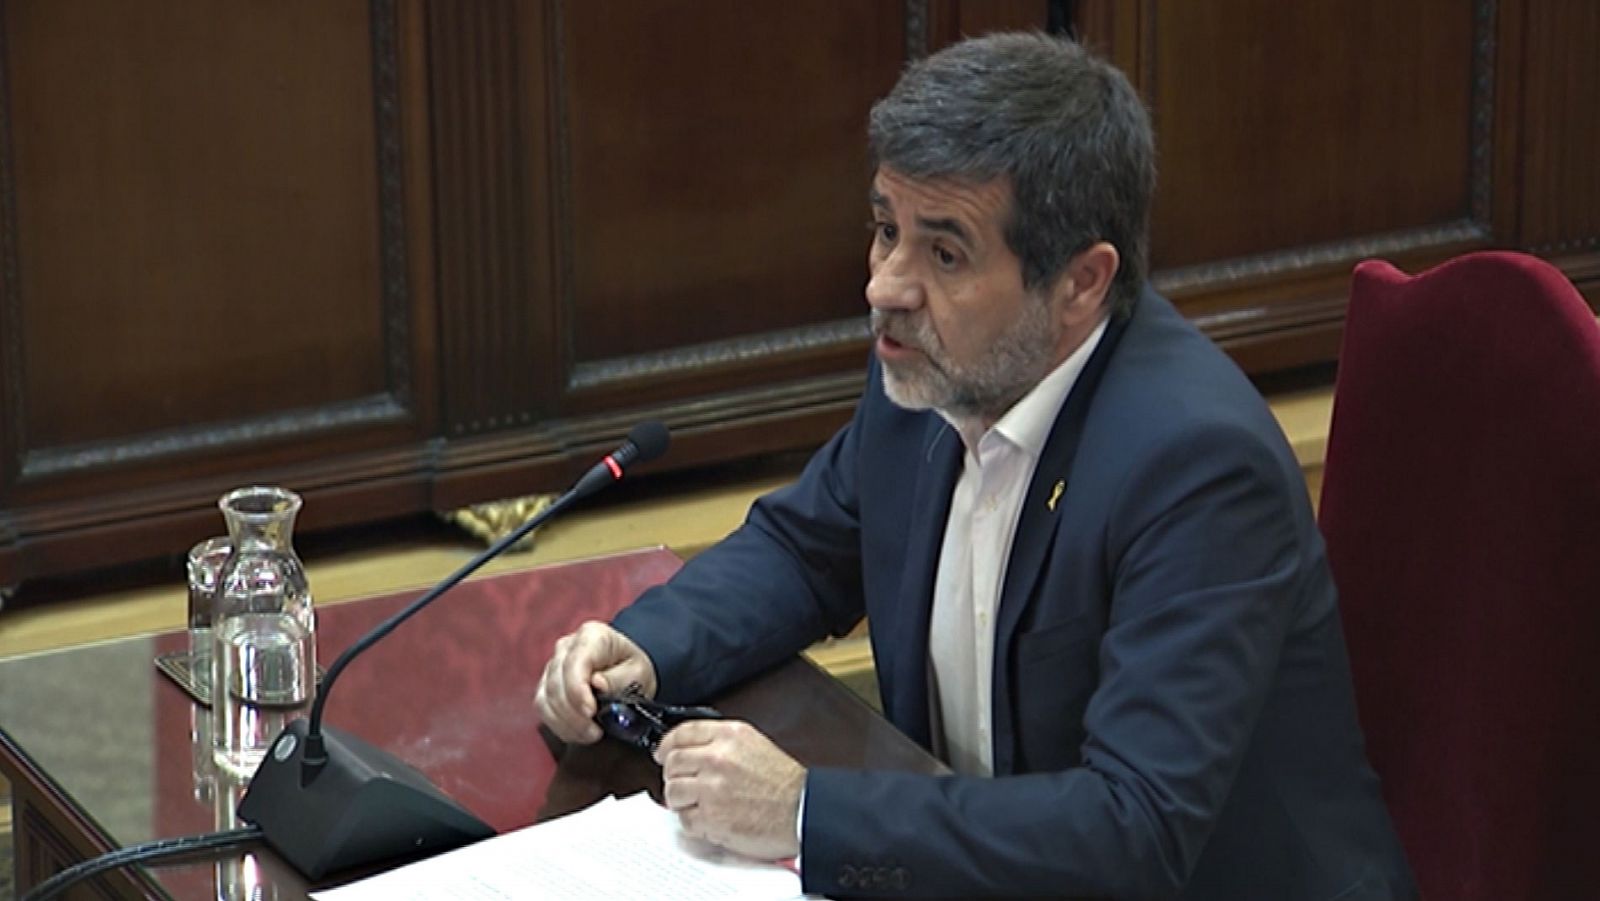 Jordi Sànchez, a los jueces del procés en su última palabra: "Ustedes pueden no agravar la crisis política"